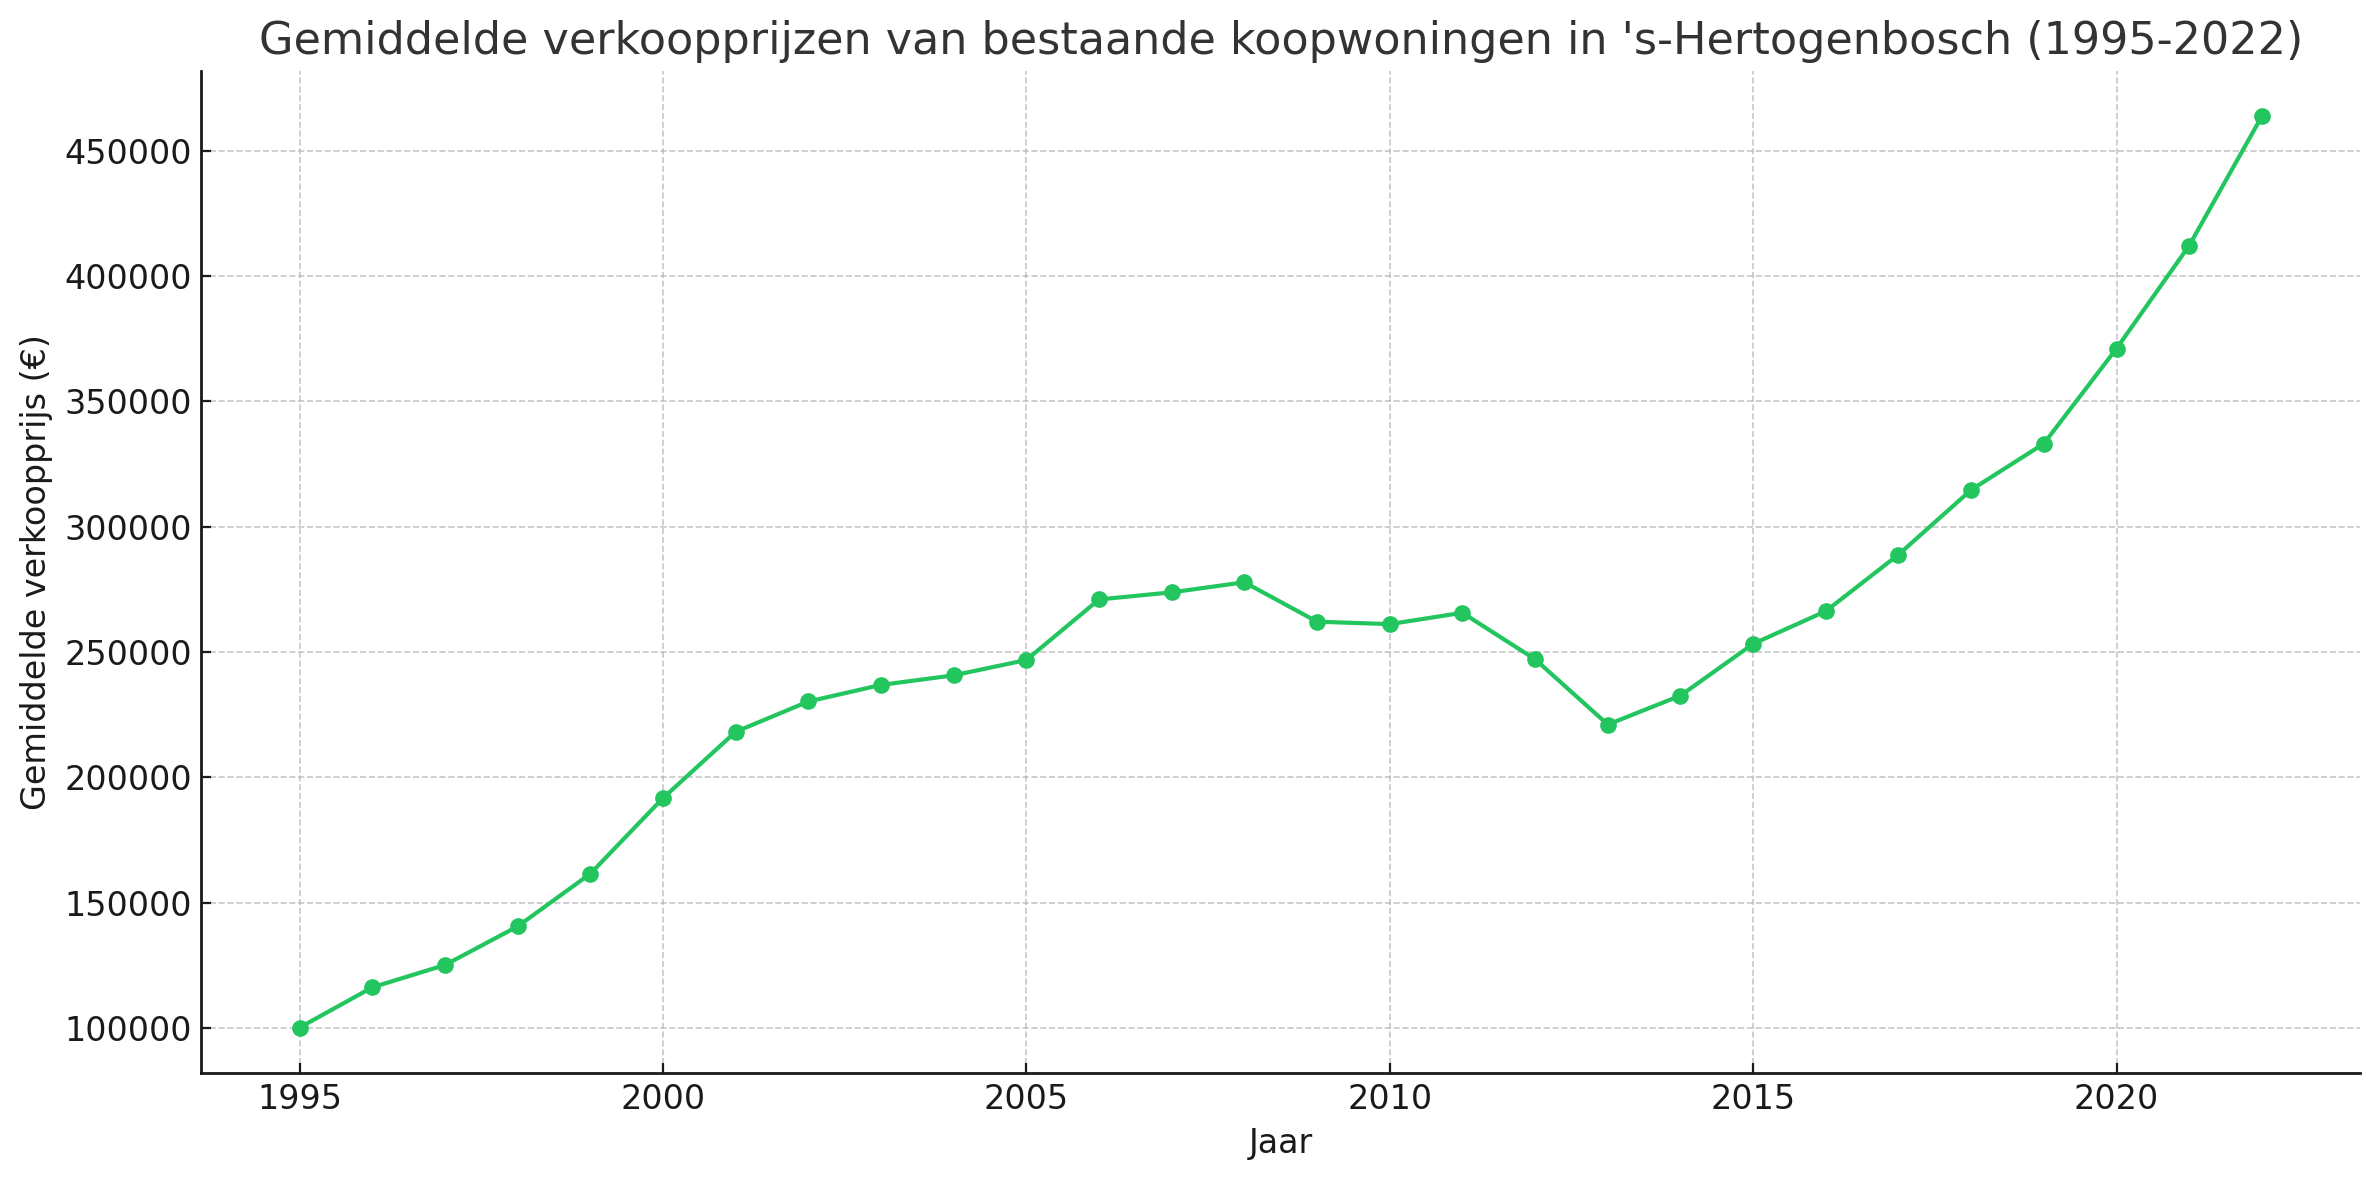 Gemiddelde verkoopprijzen van bestaande koopwoningen in shertogenbosch